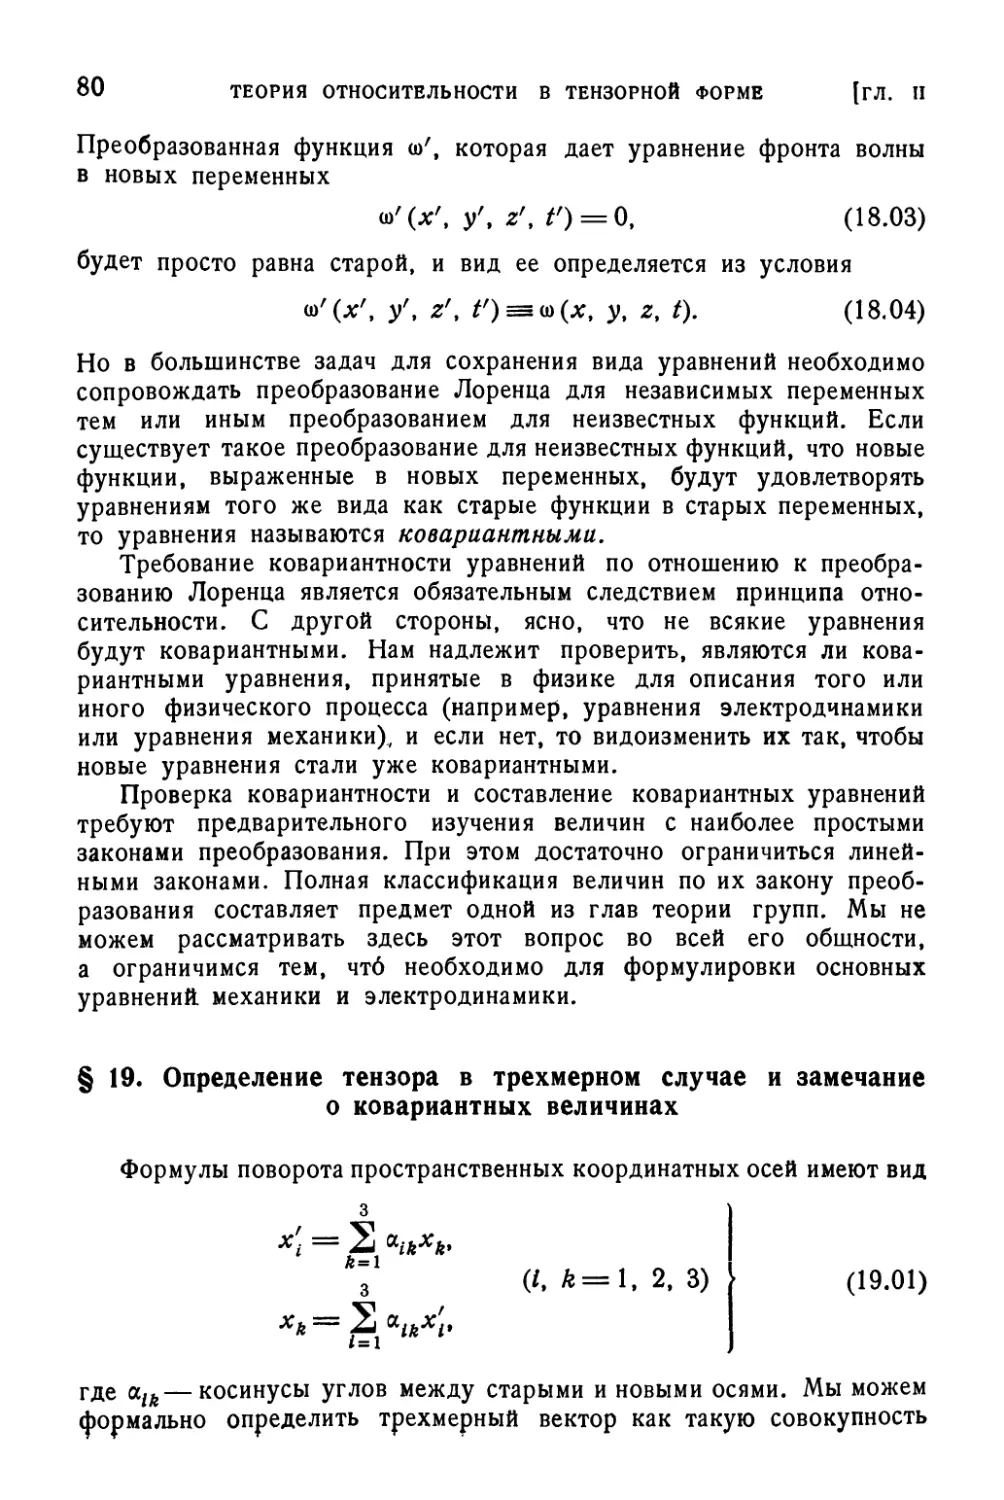 § 19. Определение тензора в трехмерном случае и замечание о ковариантных величинах